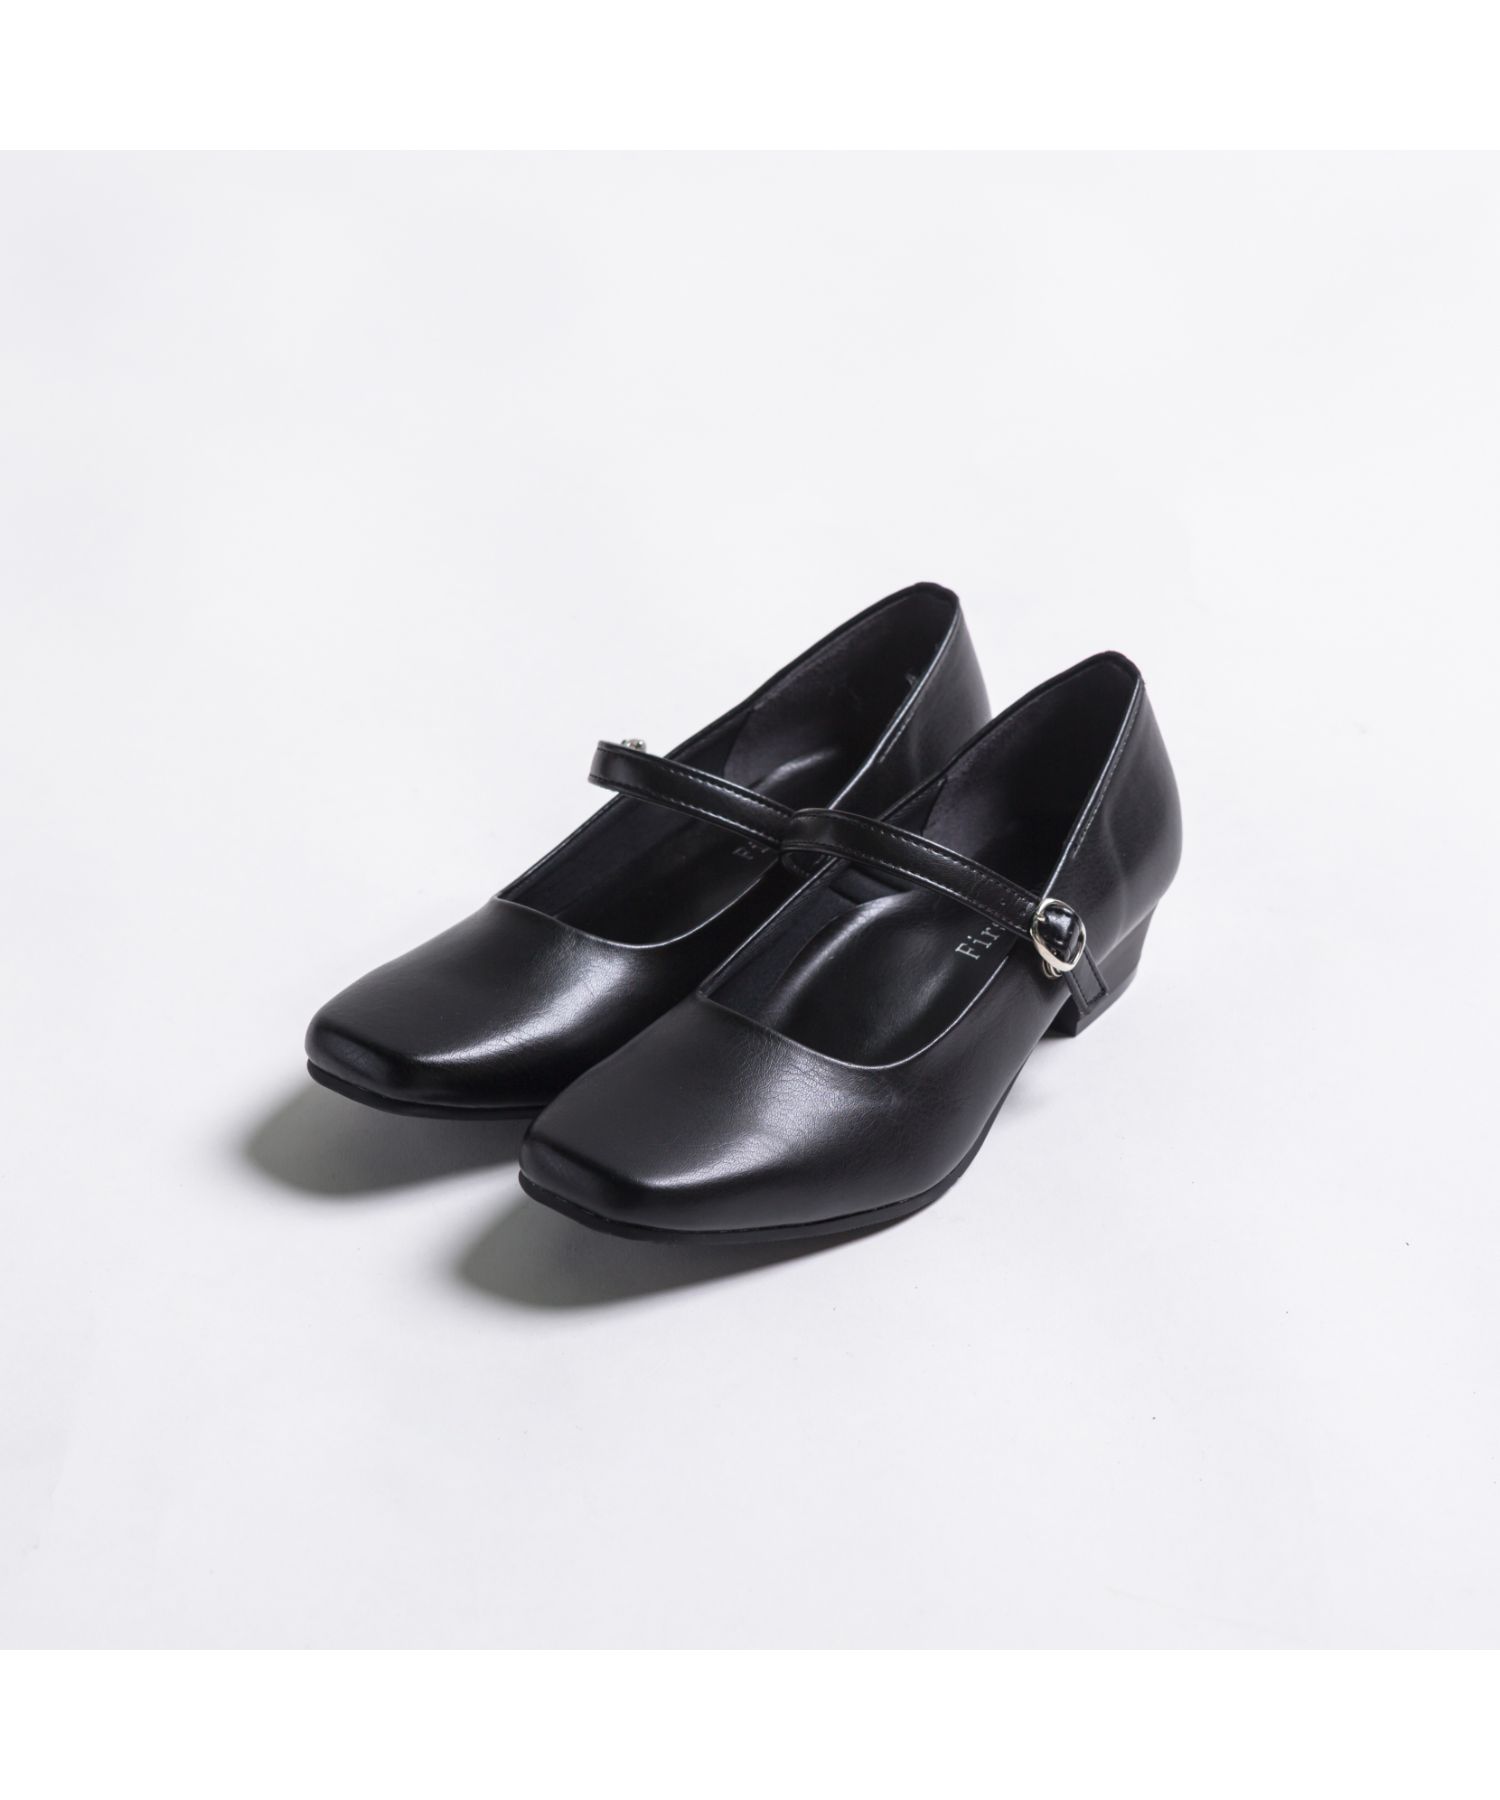 日本製 3cmヒール フォーマル パンプス 走れる / 靴 レディースシューズ 婦人靴